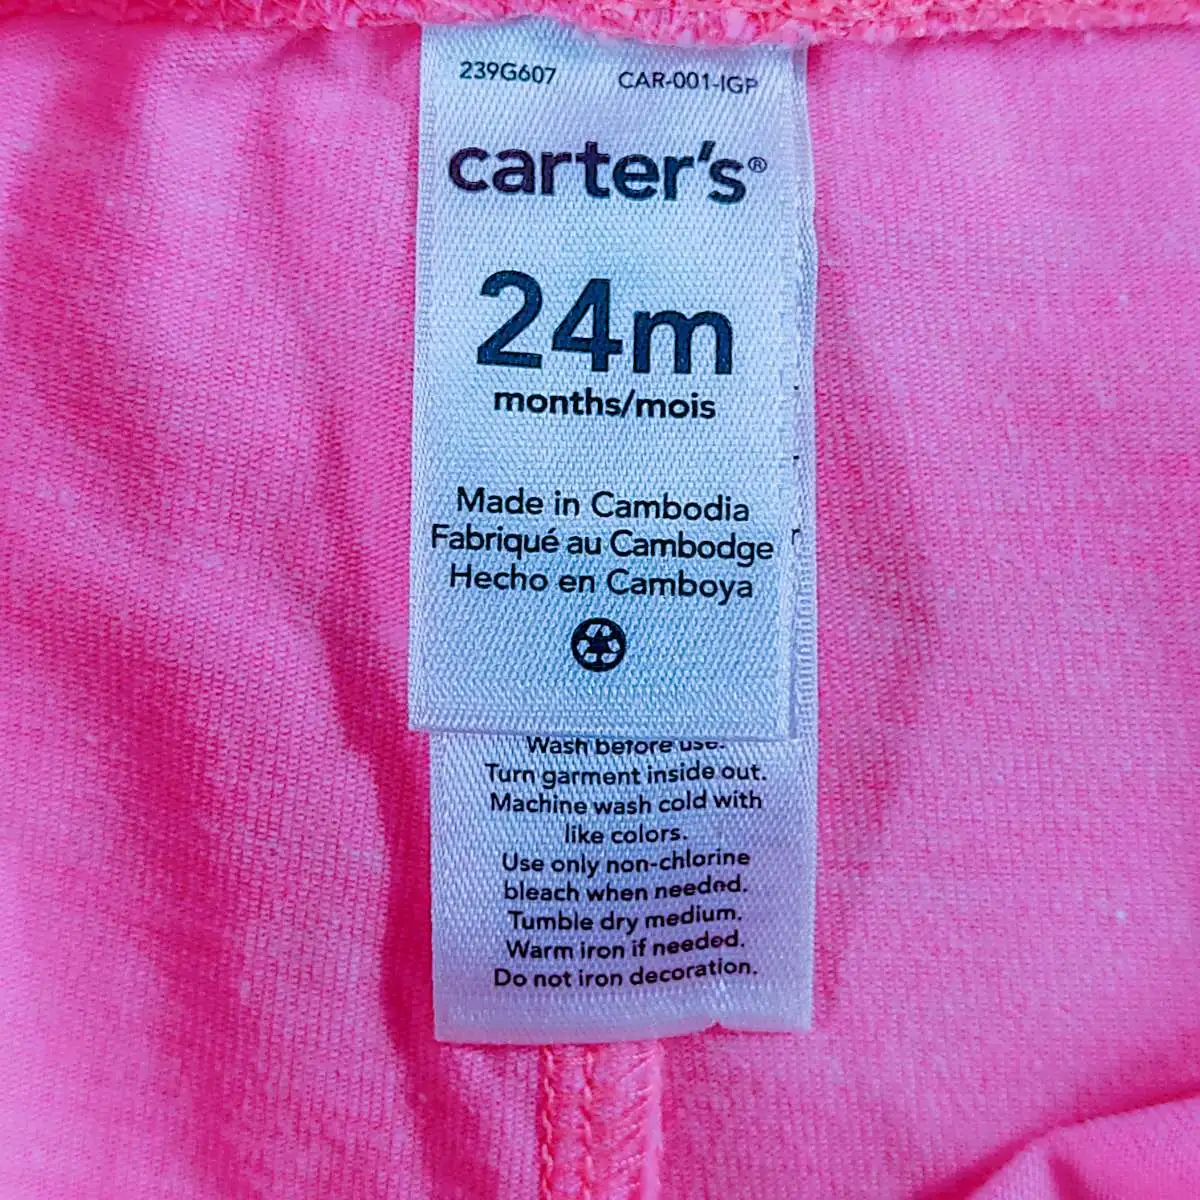 carter's กางเกงเลกกิ้งขายาวลายขวางขาวชมพูกางเกงเลกกิ้งขายาวส้มอ่อน 24m 